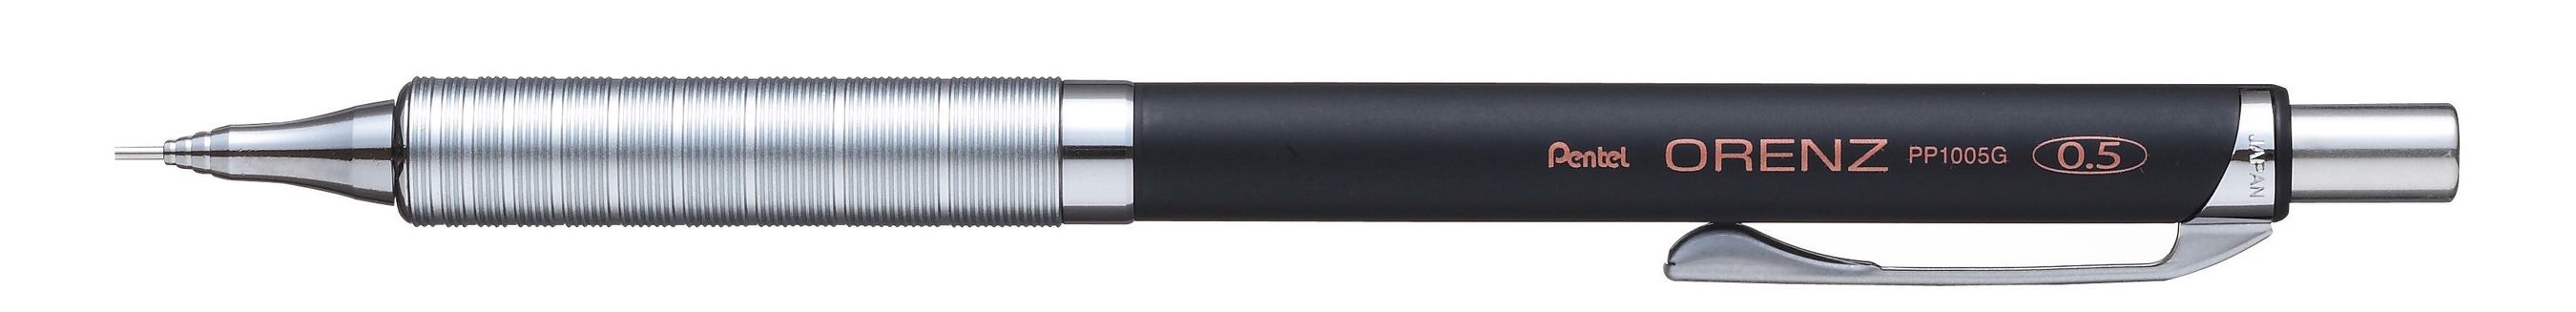 Карандаш механический Pentel Orenz Metal Grip черный корпус 0,5мм XPP1005G-AX